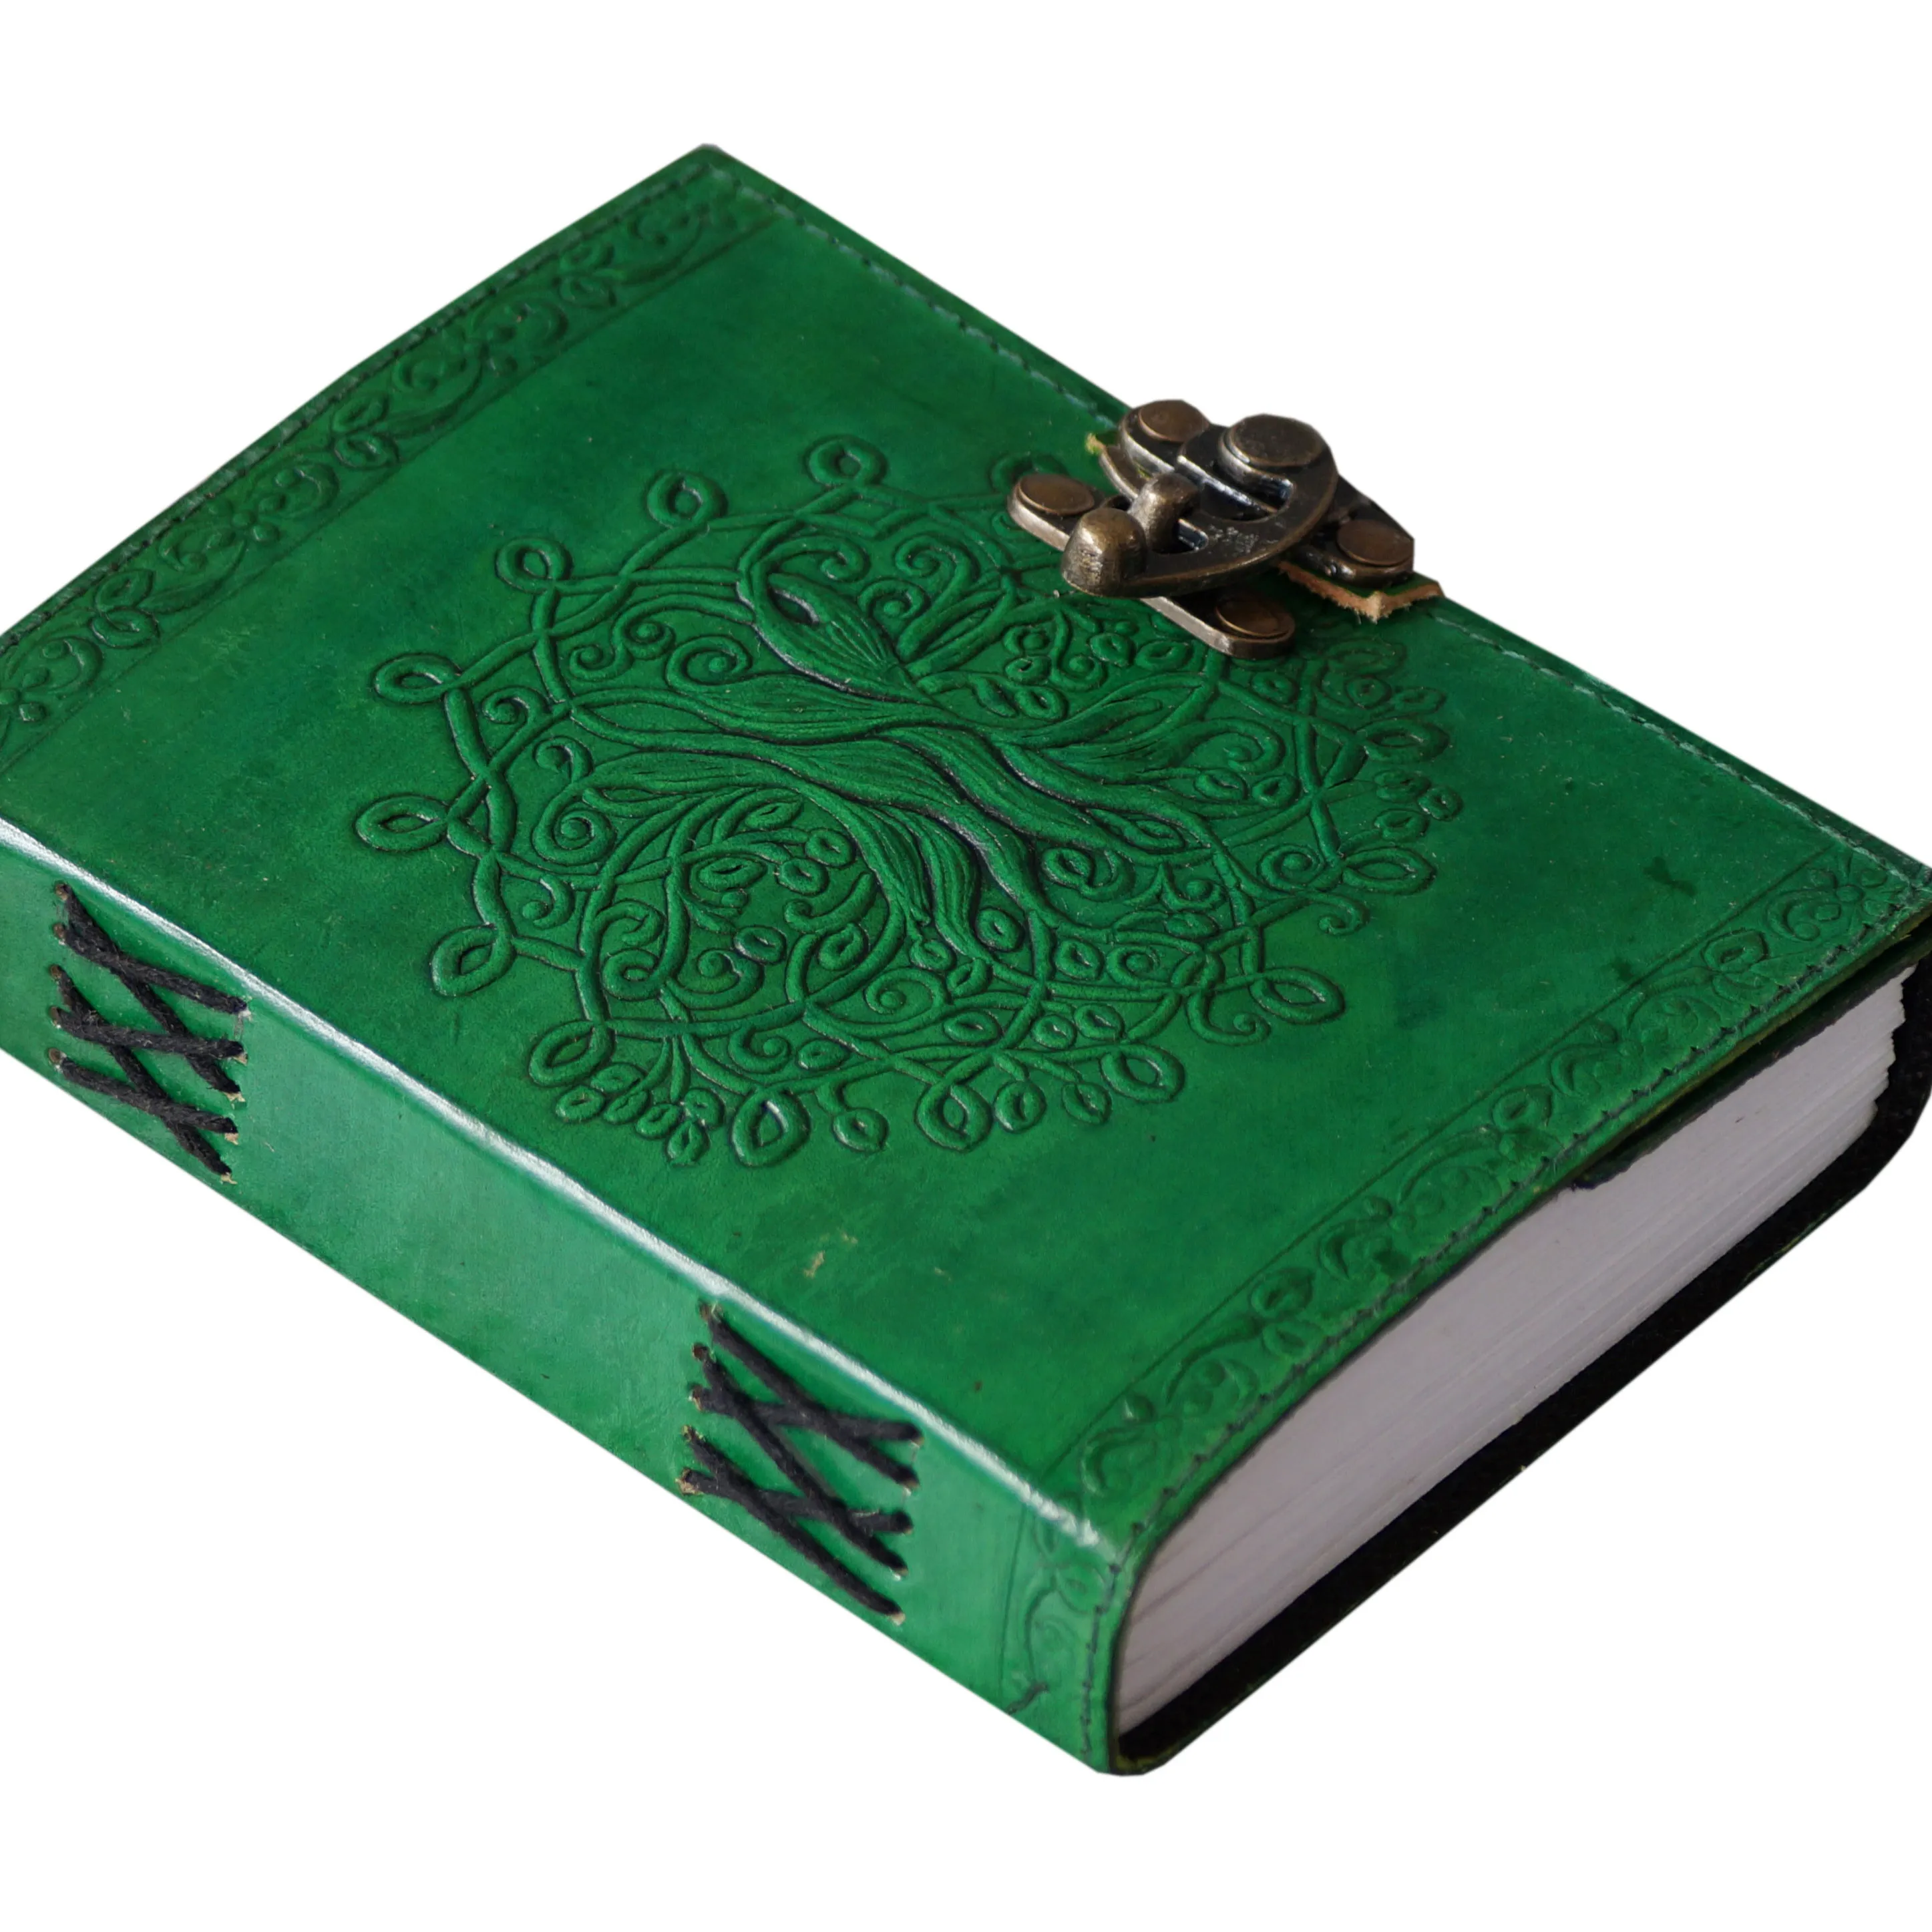 Groene Kleur Nieuwe Antiek Ontwerp Handgemaakte Voor Leather Journal Kraft Pagina Boek Van Schaduwen Beste Cadeau Voor Man En Vrouwen